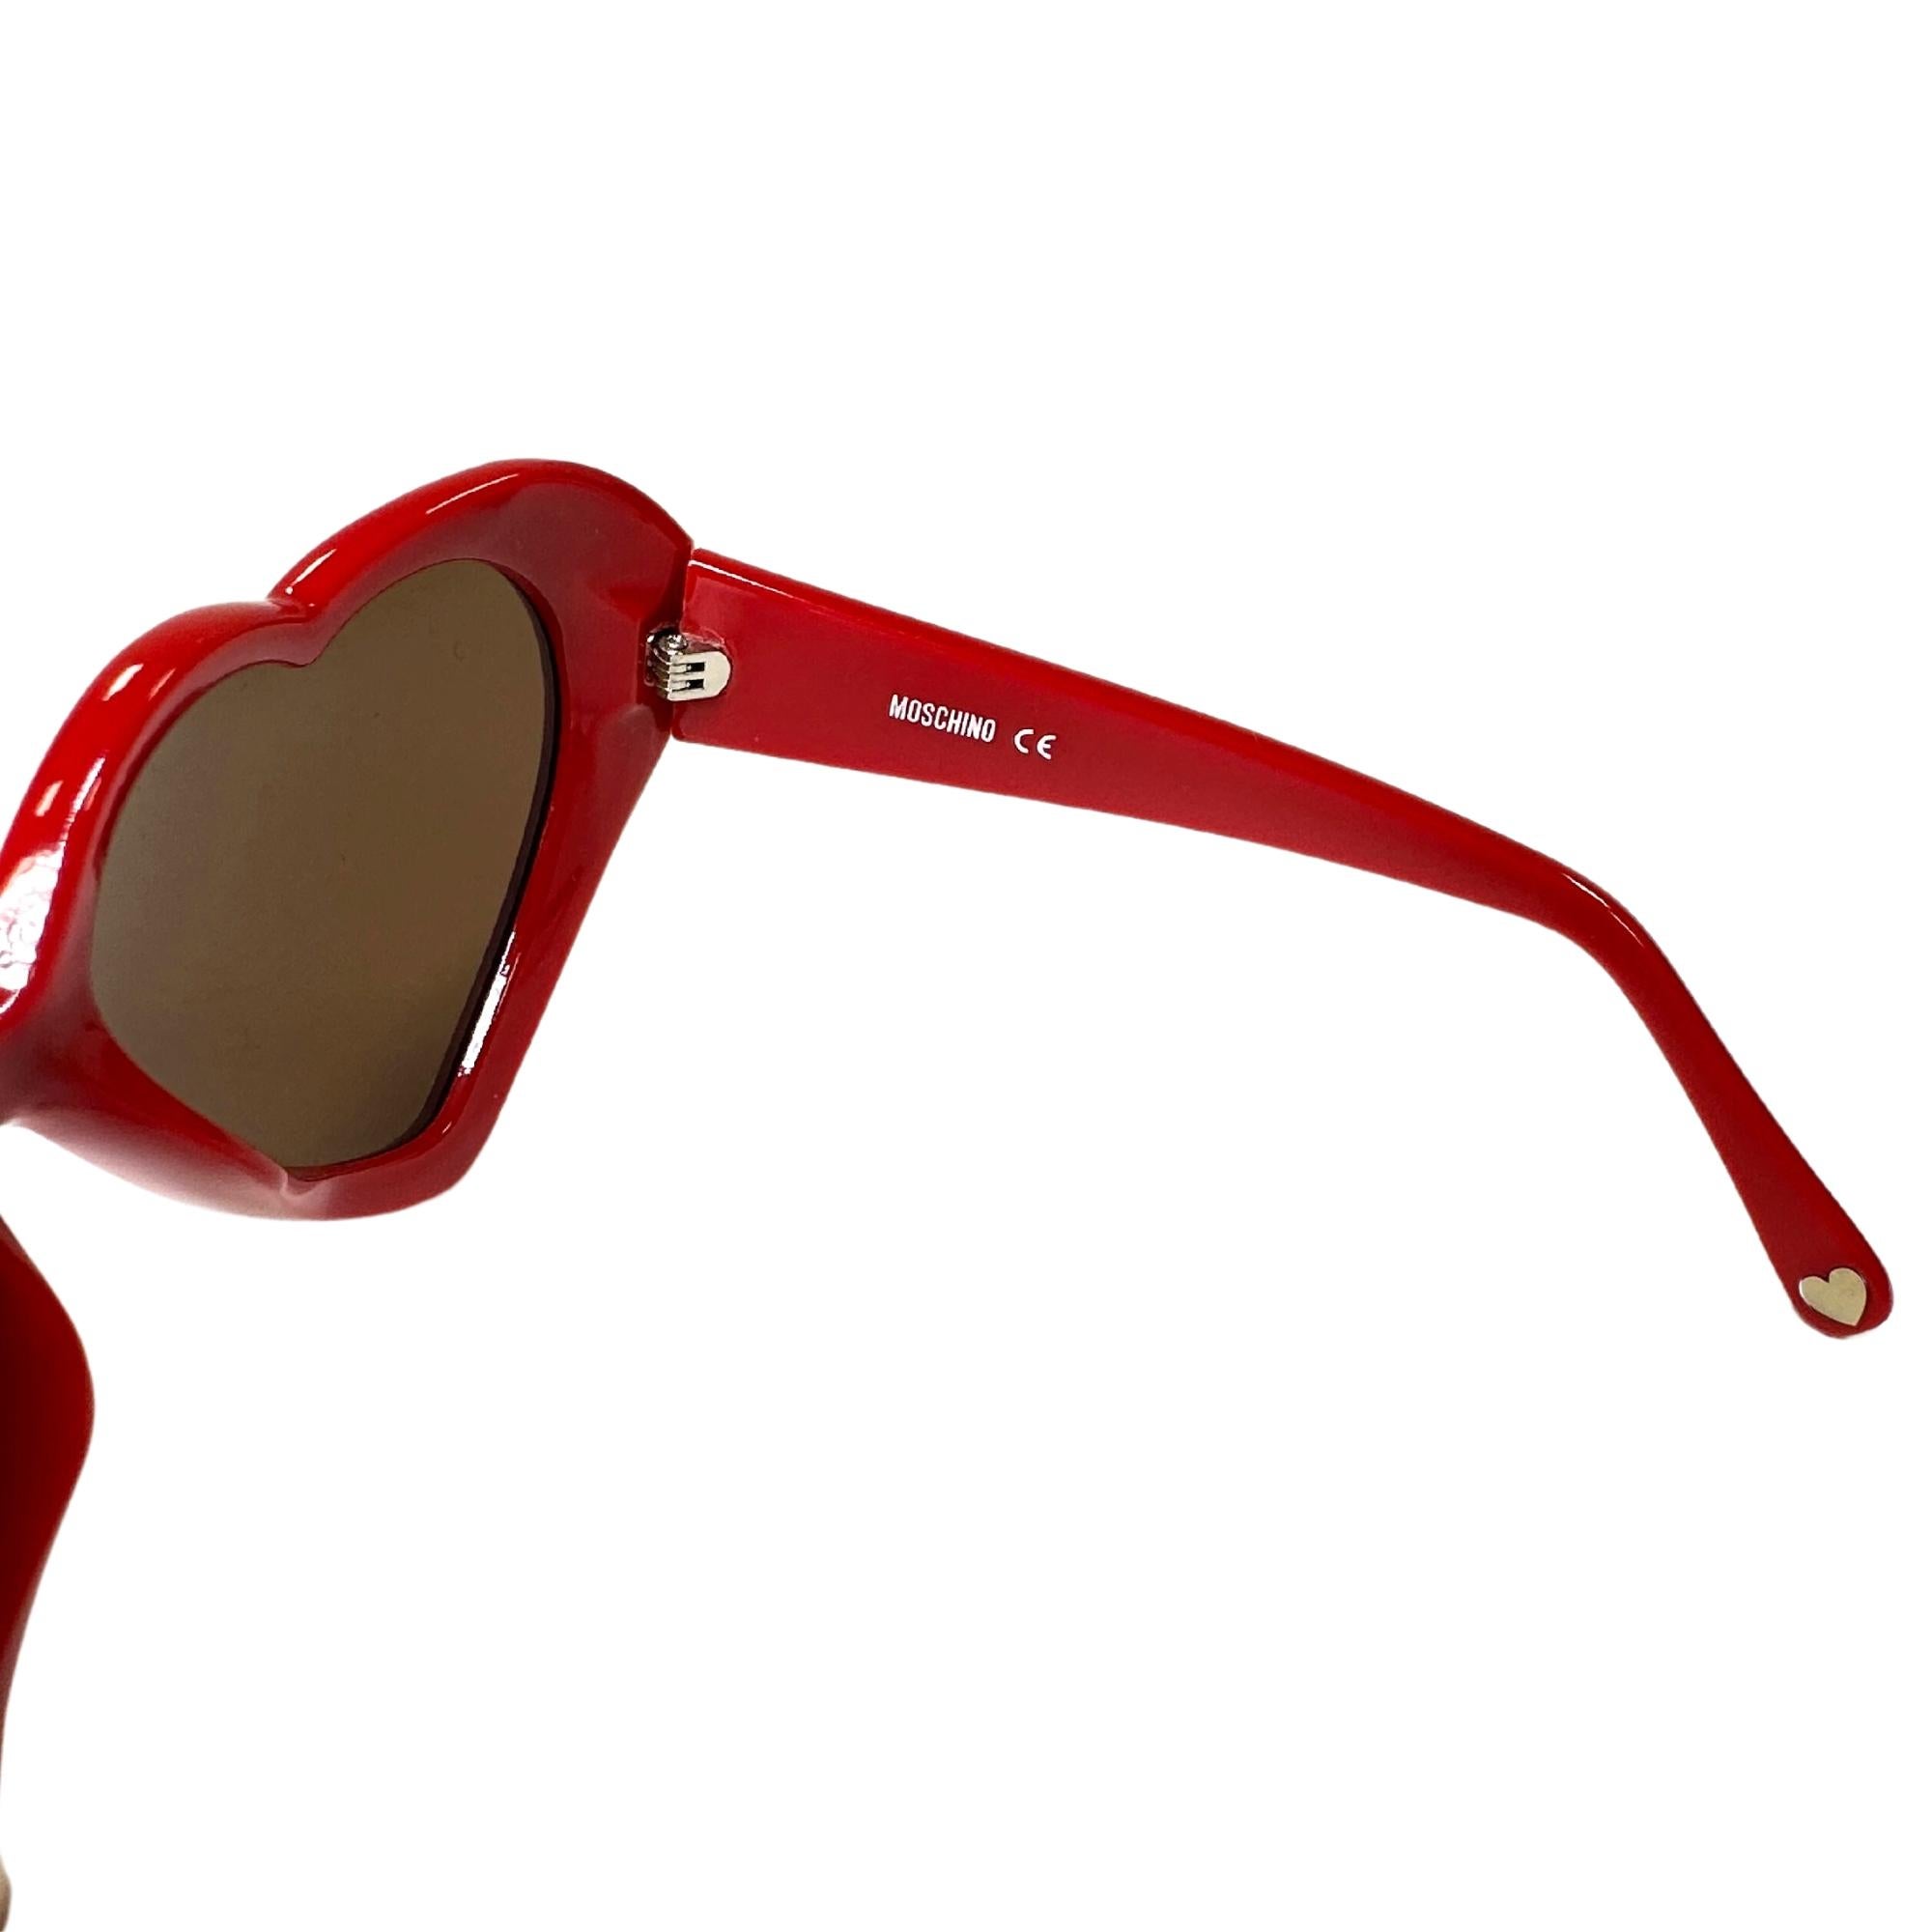 moschino red heart sunglasses